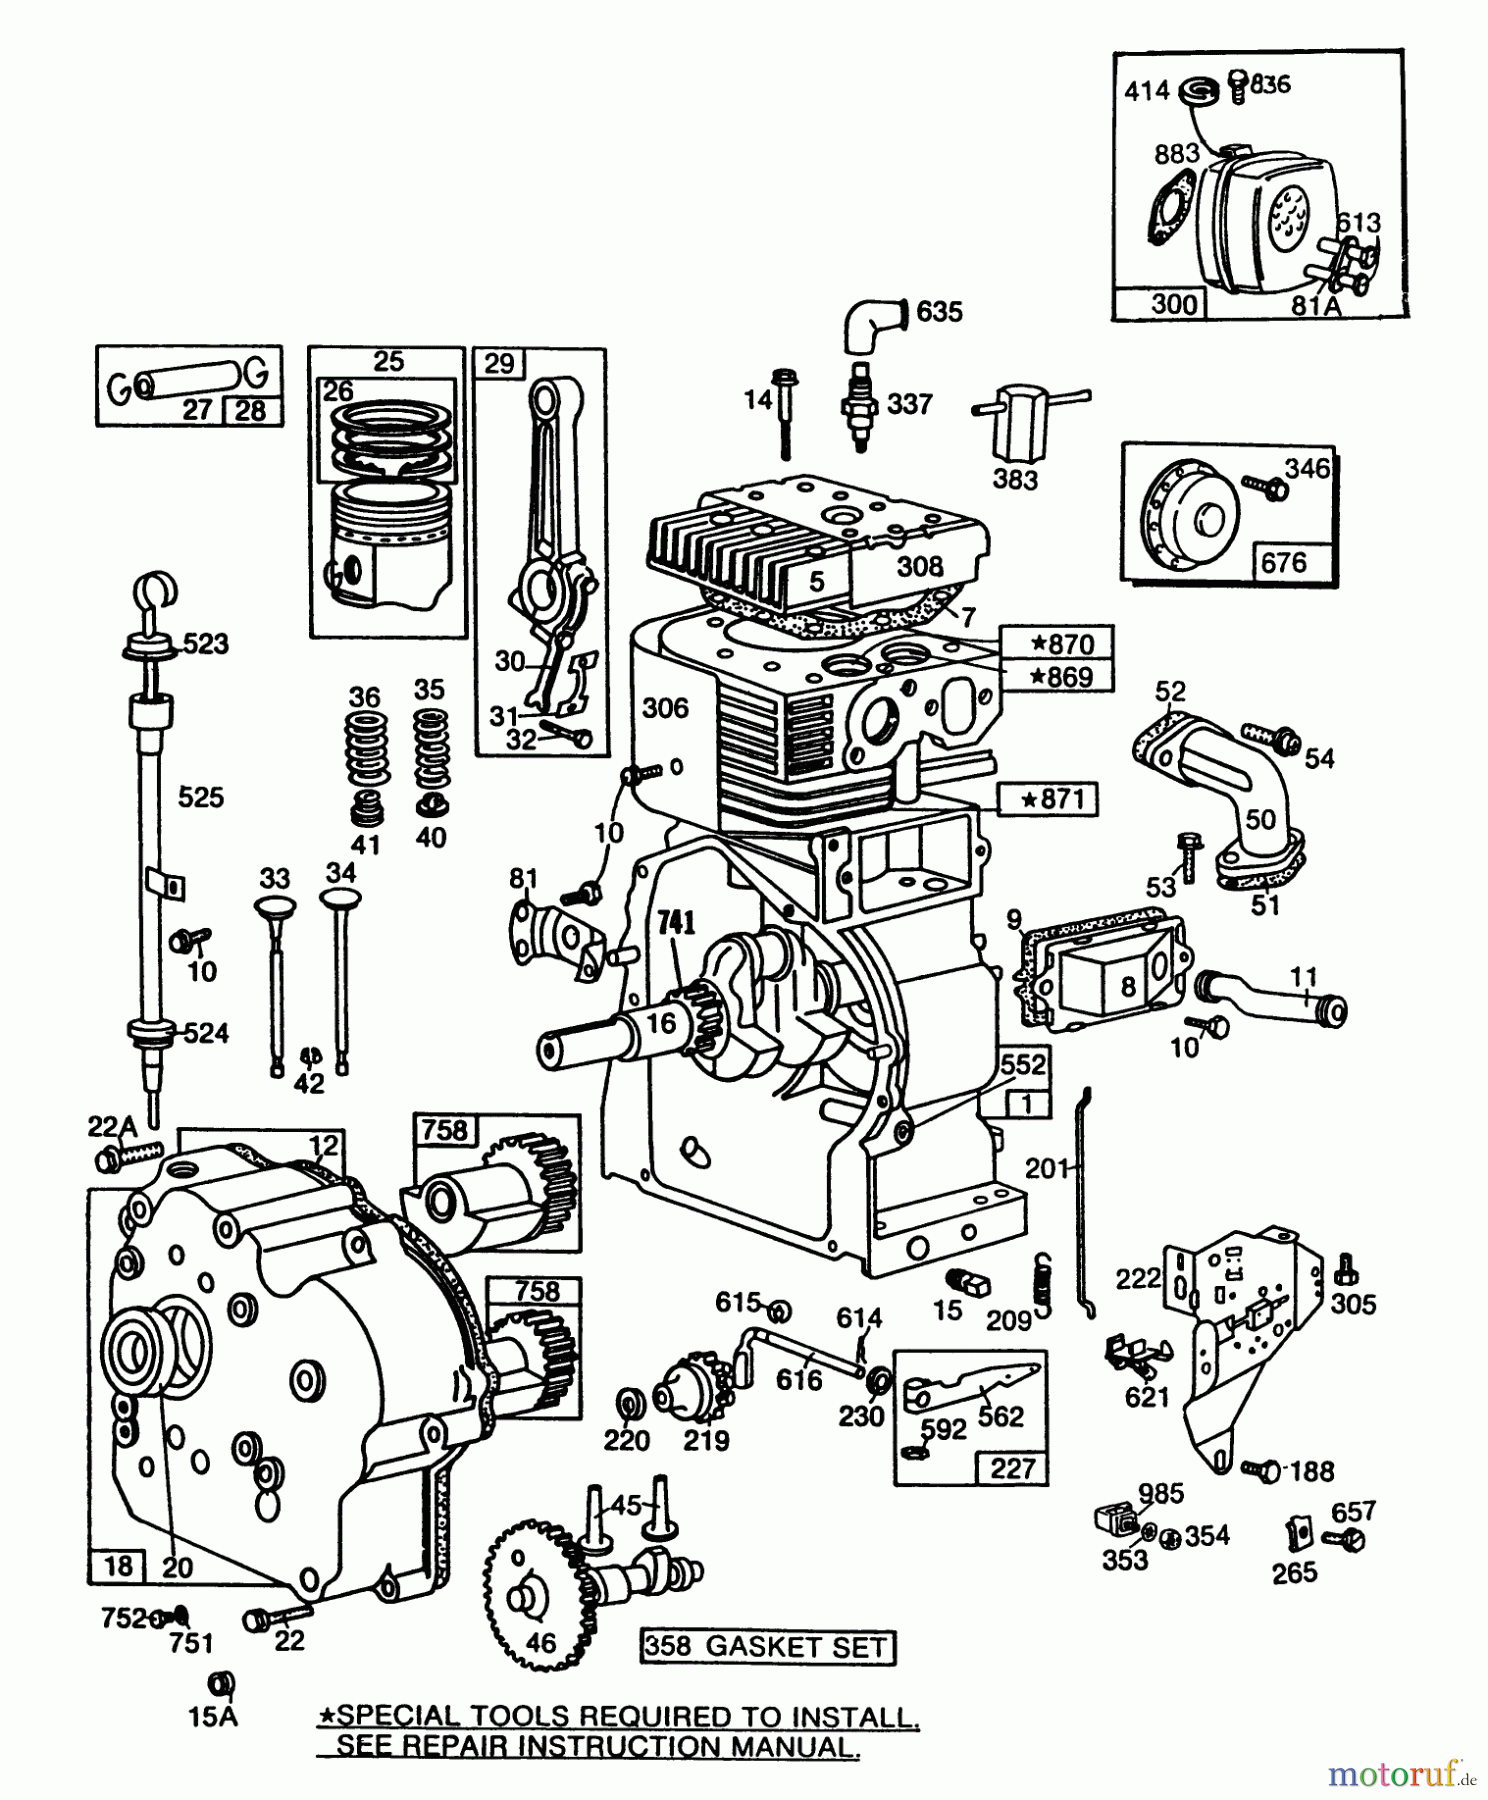  Toro Neu Snow Blowers/Snow Throwers Seite 1 38095 (1132) - Toro 1132 Snowthrower, 1987 (7000001-7999999) ENGINE BRIGGS & STRATTON MODEL NO. 252416-0735-01 #1